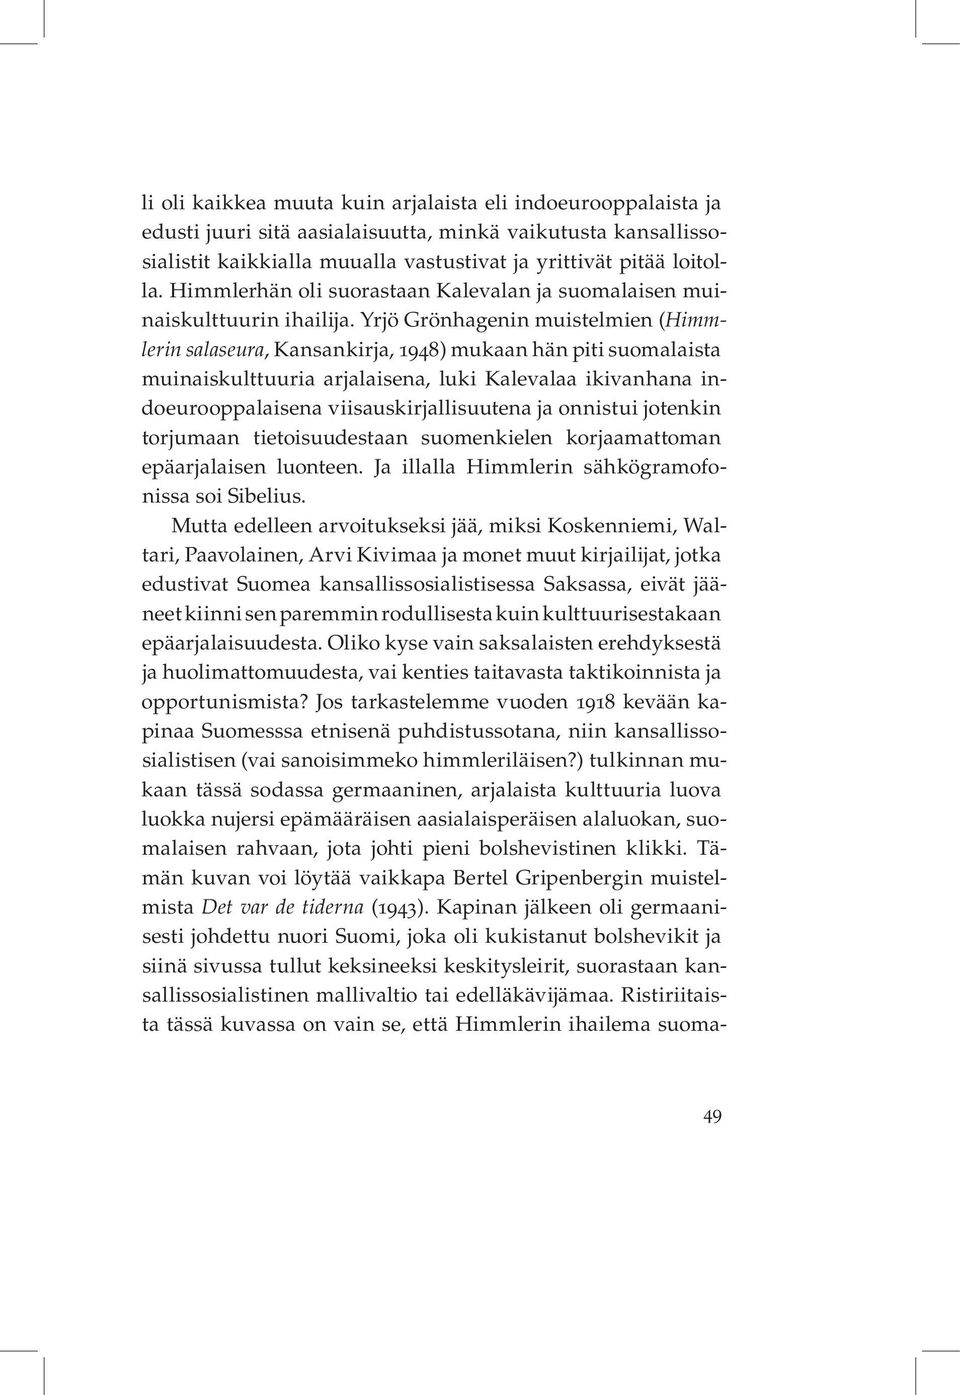 Yrjö Grönhagenin muistelmien (Himmlerin salaseura, Kansankirja, 1948) mukaan hän piti suomalaista muinaiskulttuuria arjalaisena, luki Kalevalaa ikivanhana indoeurooppalaisena viisauskirjallisuutena